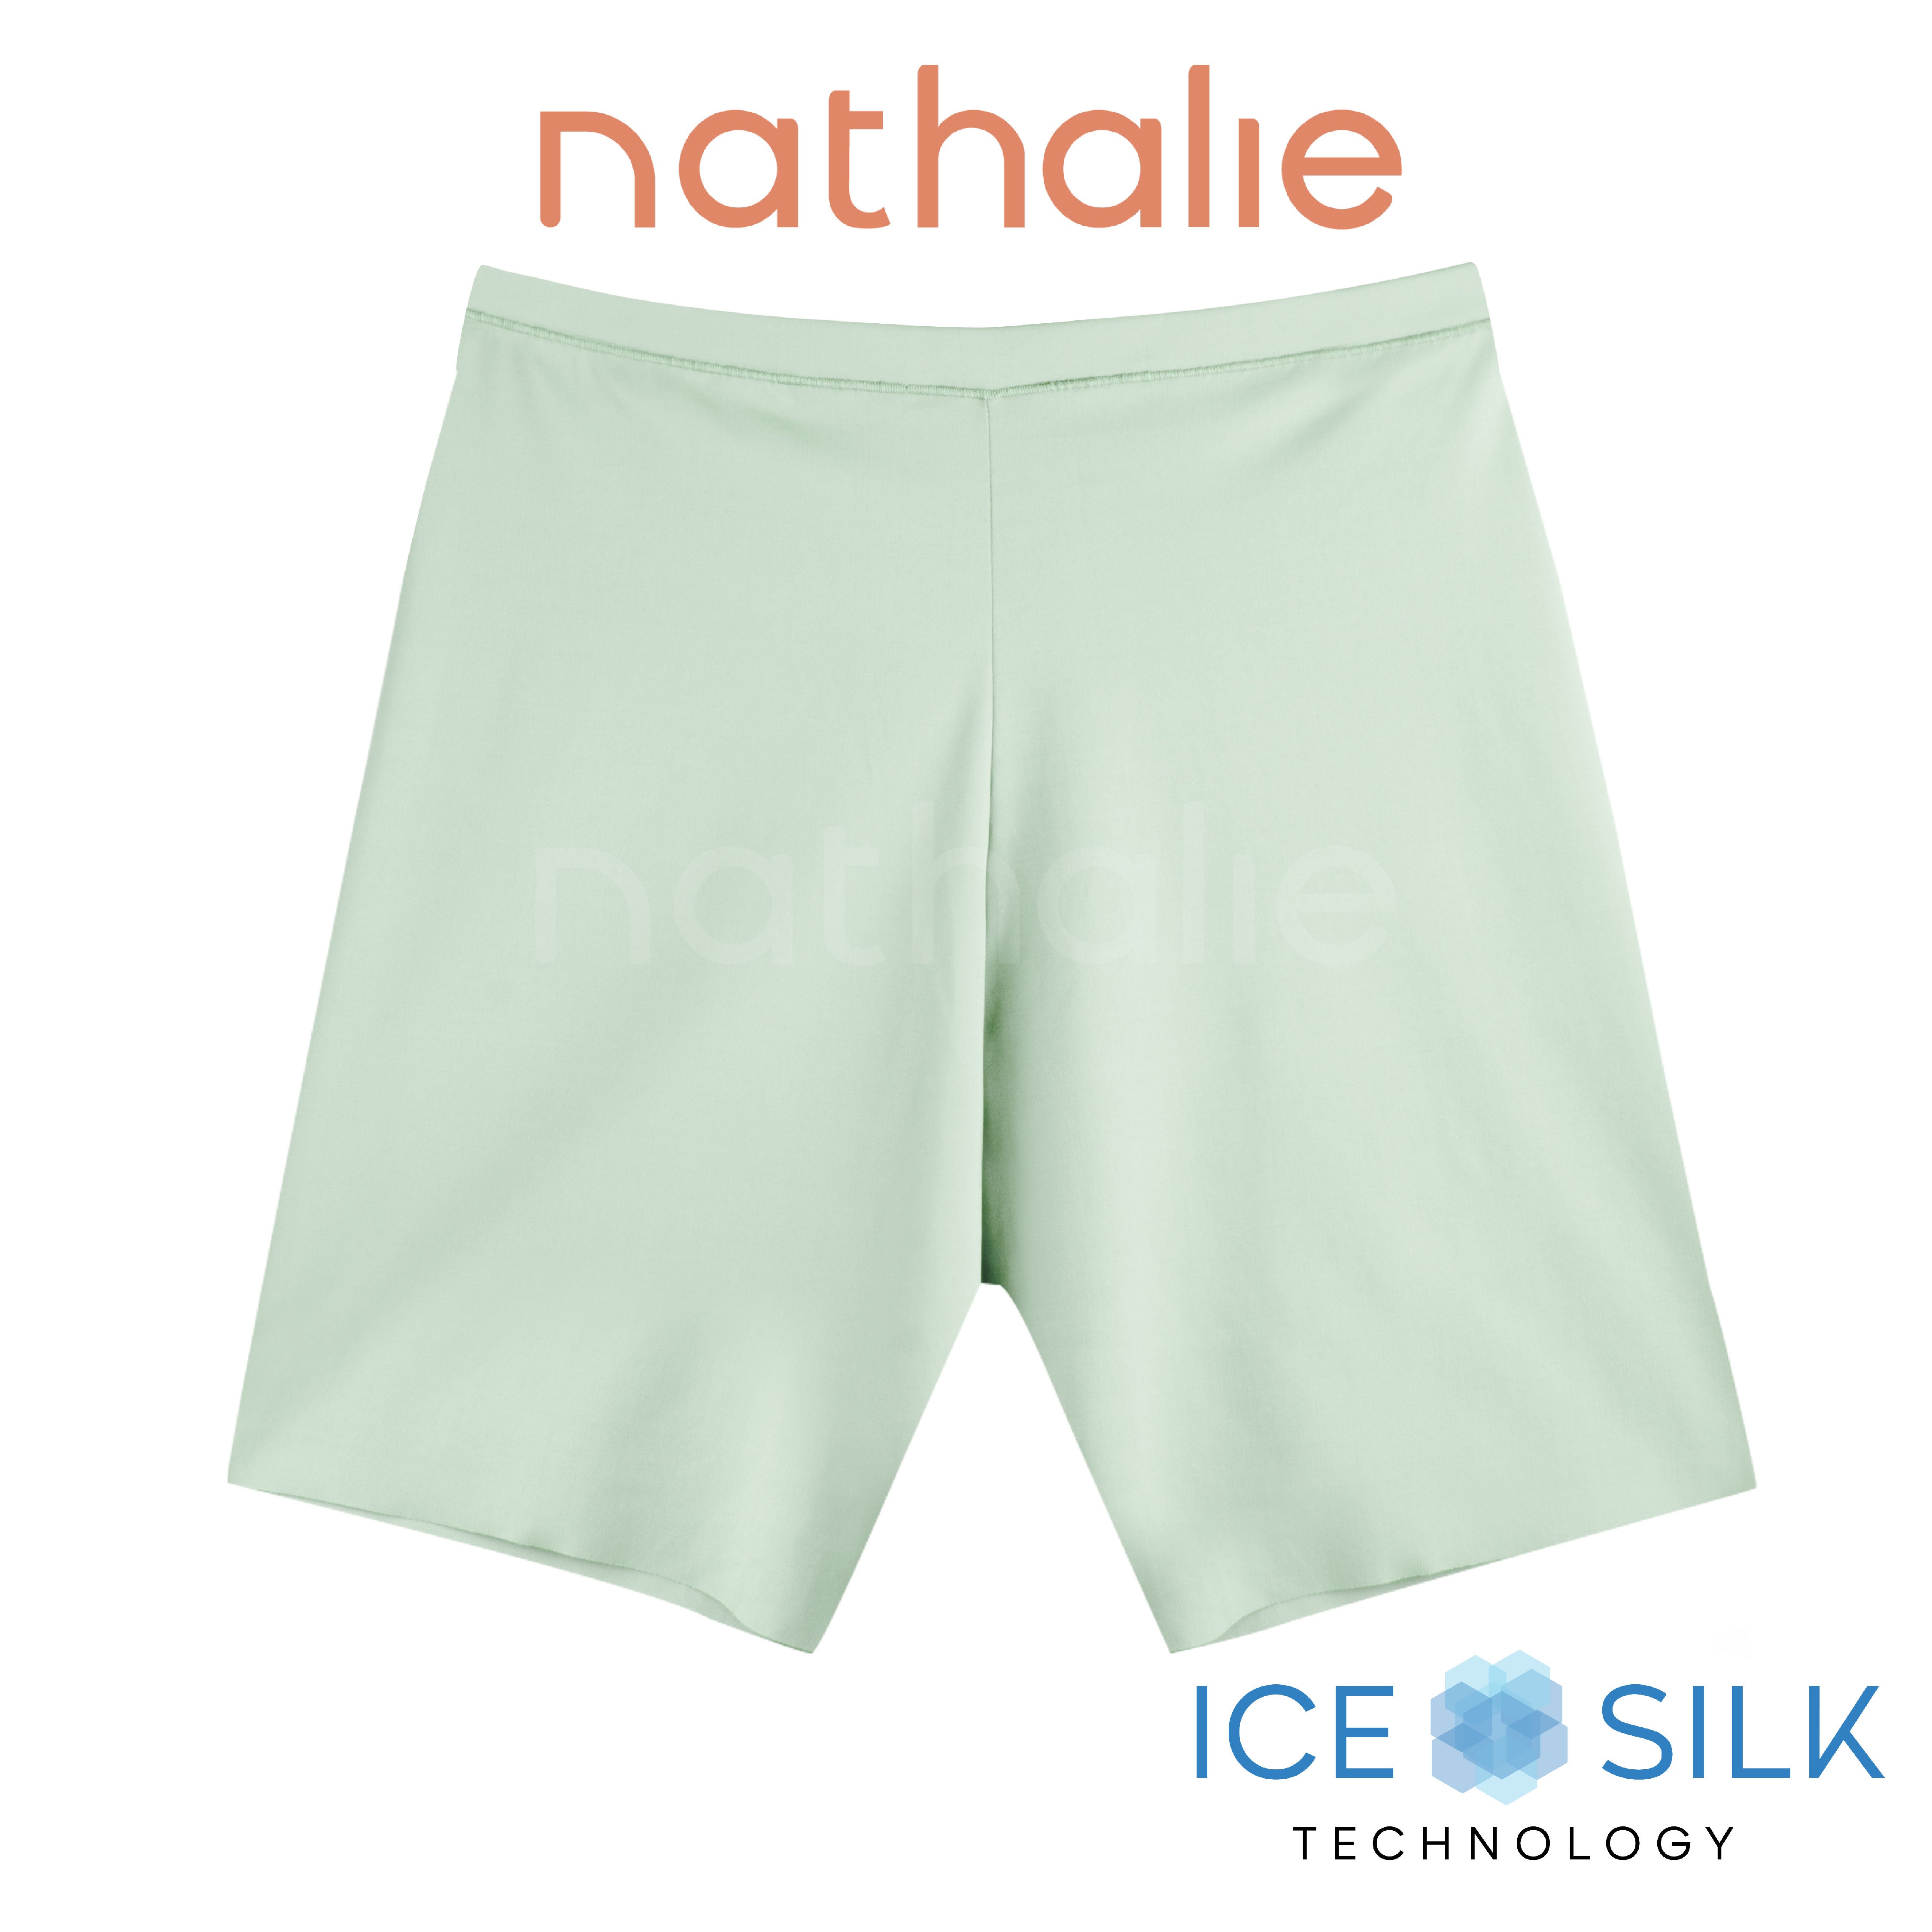 Nathalie Short Pants Wanita Ice Silk Celana Ketat Strit Cewek Nylon 1 Pcs NTC 3439